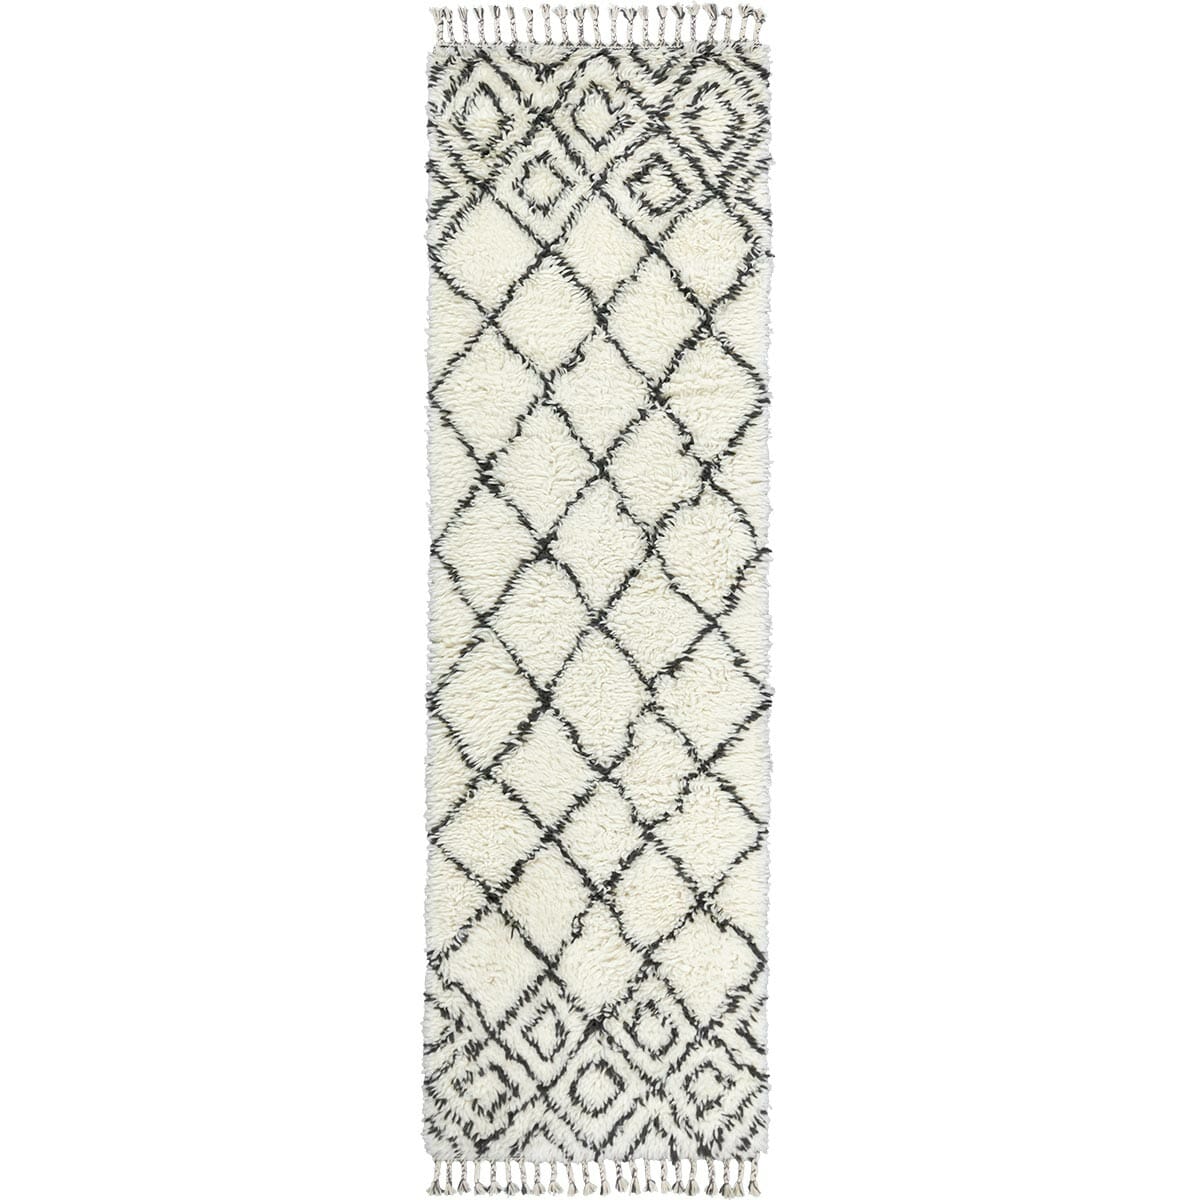 שטיח ברבר מרוקאי 05 לבן/שחור ראנר עם פרנזים | השטיח האדום